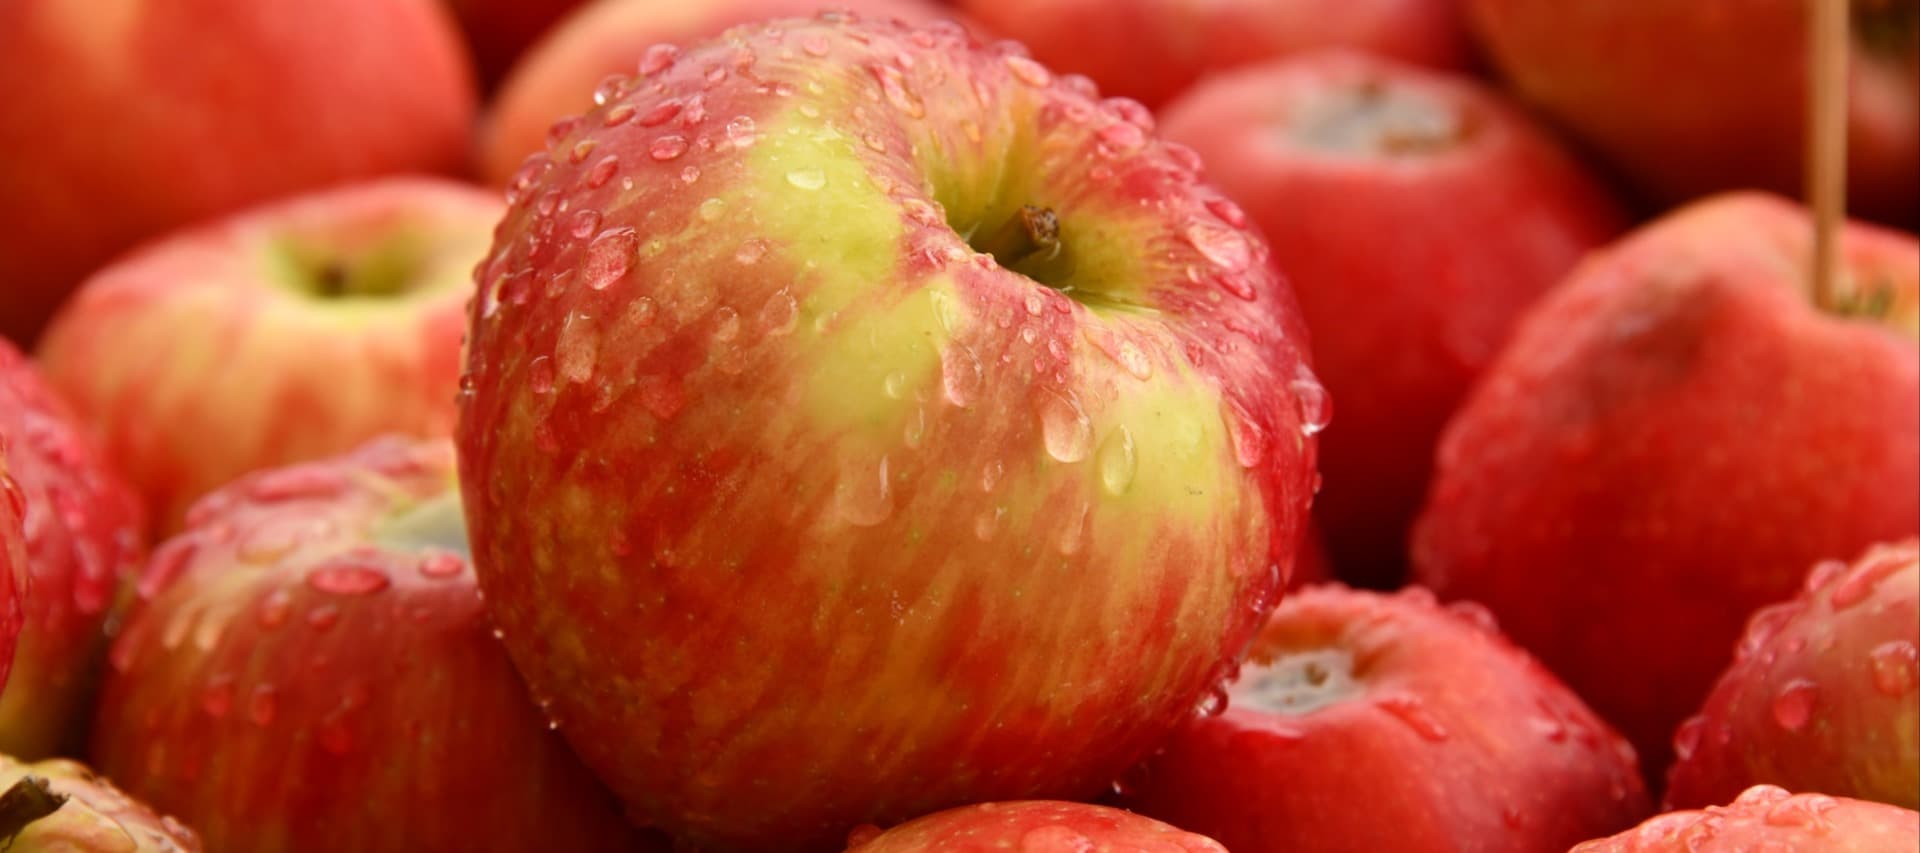 Фото новости: "Челябинские аграрии начнут выращивать квадратные яблоки"